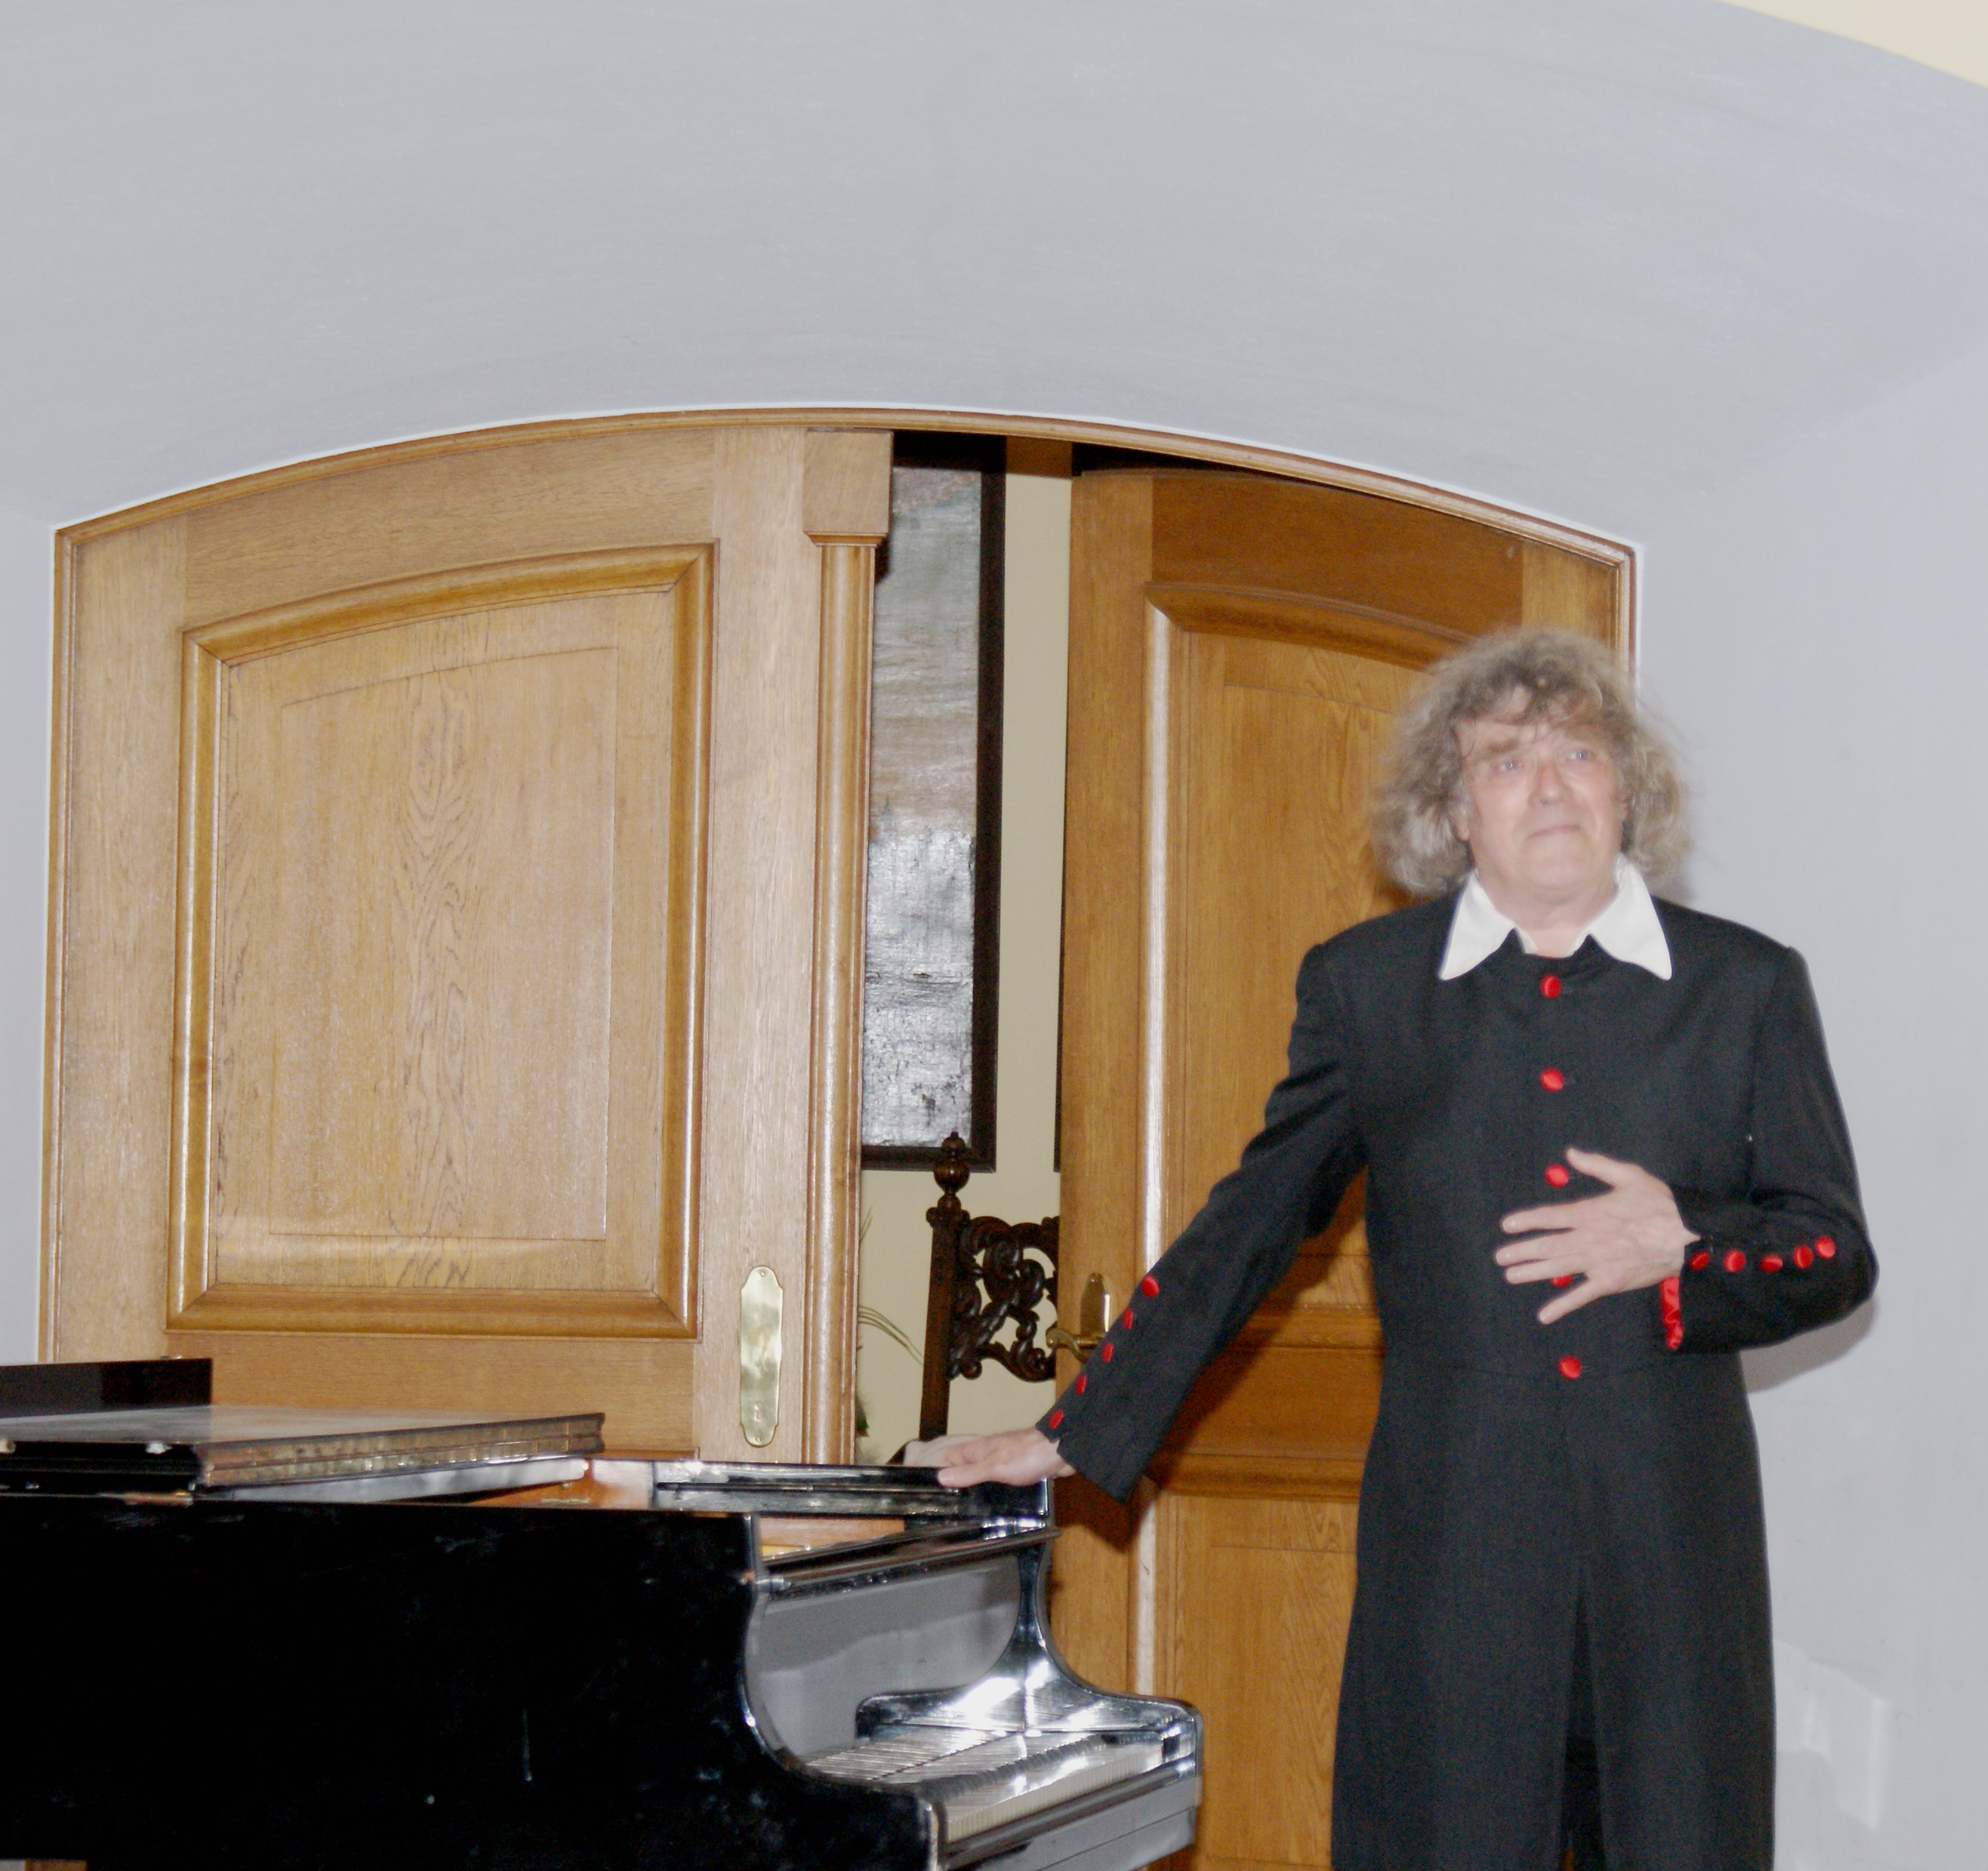 Pianist Jószef Acs riss die Zuhörer im Rittersaal der Burg mit seinem leidenschaftlichen Spiel am Flügel mit. Seine Interpretationen von Chopin und Liszt erhielten reichlich Beifall.